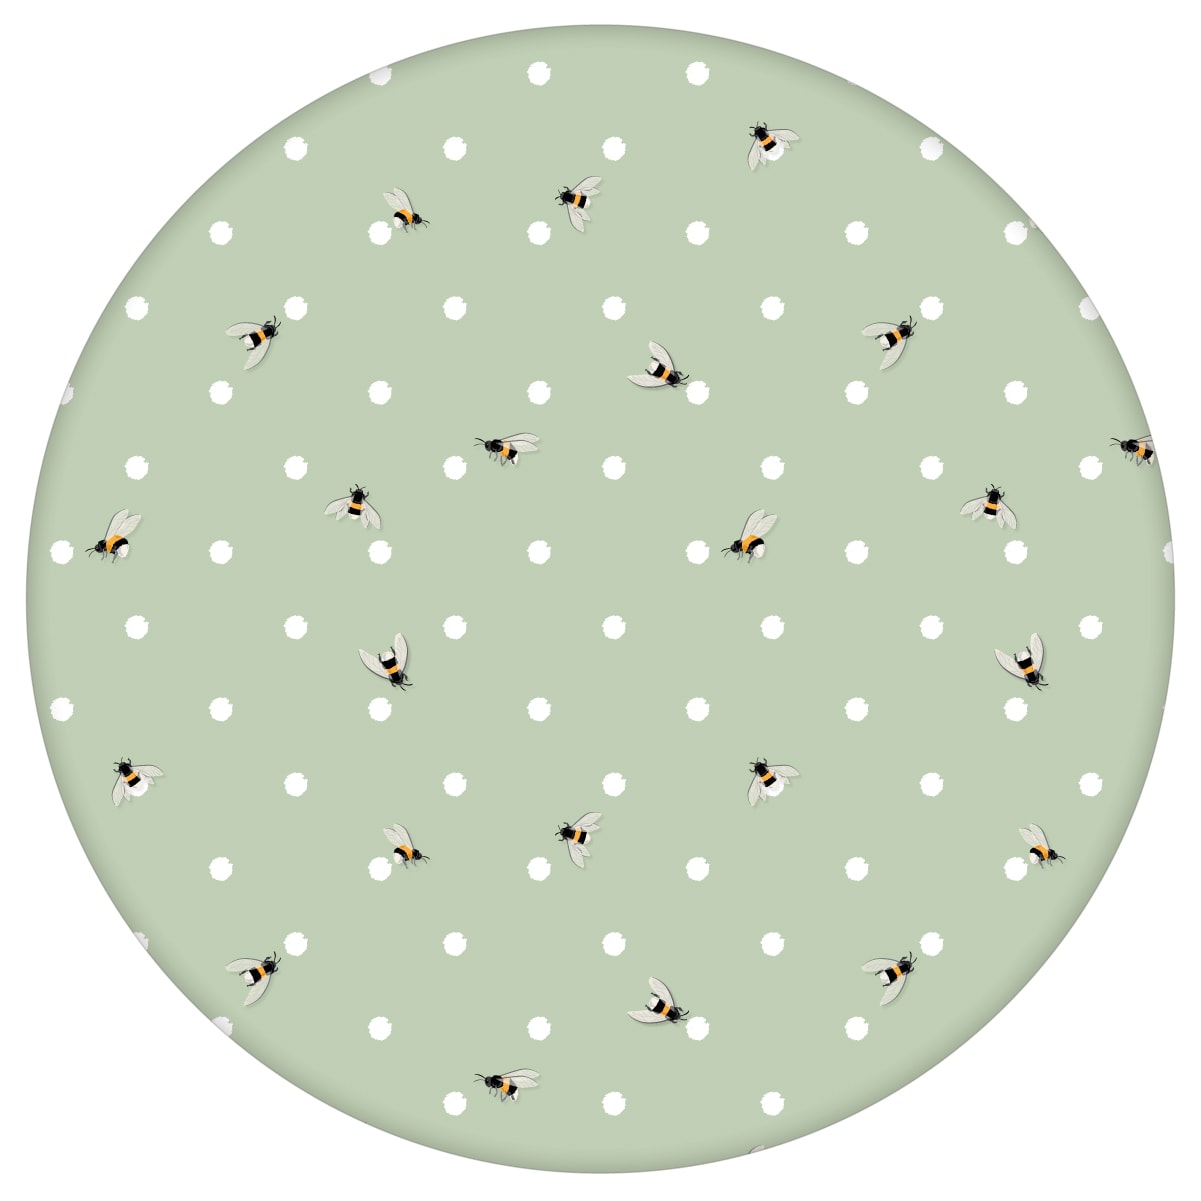 Grüne Tapete "Polka Bee" mit Bienen & Punkten, Vlies Tapete Grafik Tiere, schöne Wandtapete für Kücheaus dem GMM-BERLIN.com Sortiment: grüne Tapete zur Raumgestaltung: #00167 #Biene #gruen #Grüne Tapeten #Insekten #kueche #Pünktchen #punkte #Tier Tapete #tiere für individuelles Interiordesign